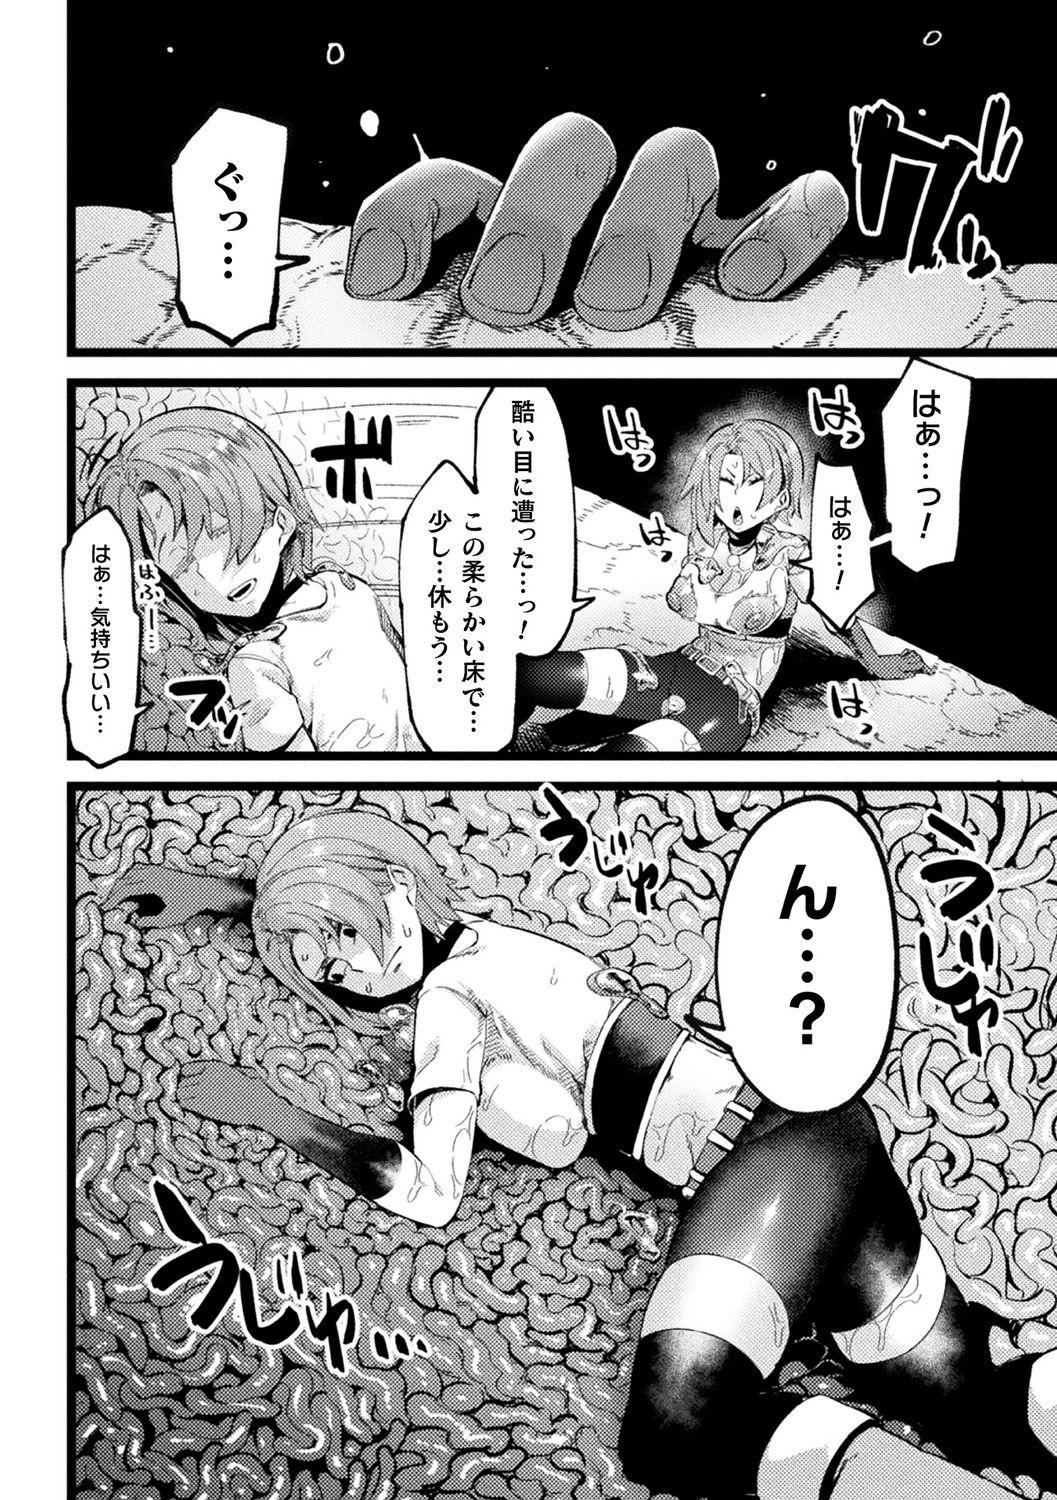 [Anthology] Bessatsu Comic Unreal Ponkotsu Fantasy Heroine H ~Doji o Funde Gyakuten Saretari Ero Trap ni Hamattari!?~ Vol. 2 [Digital] 48